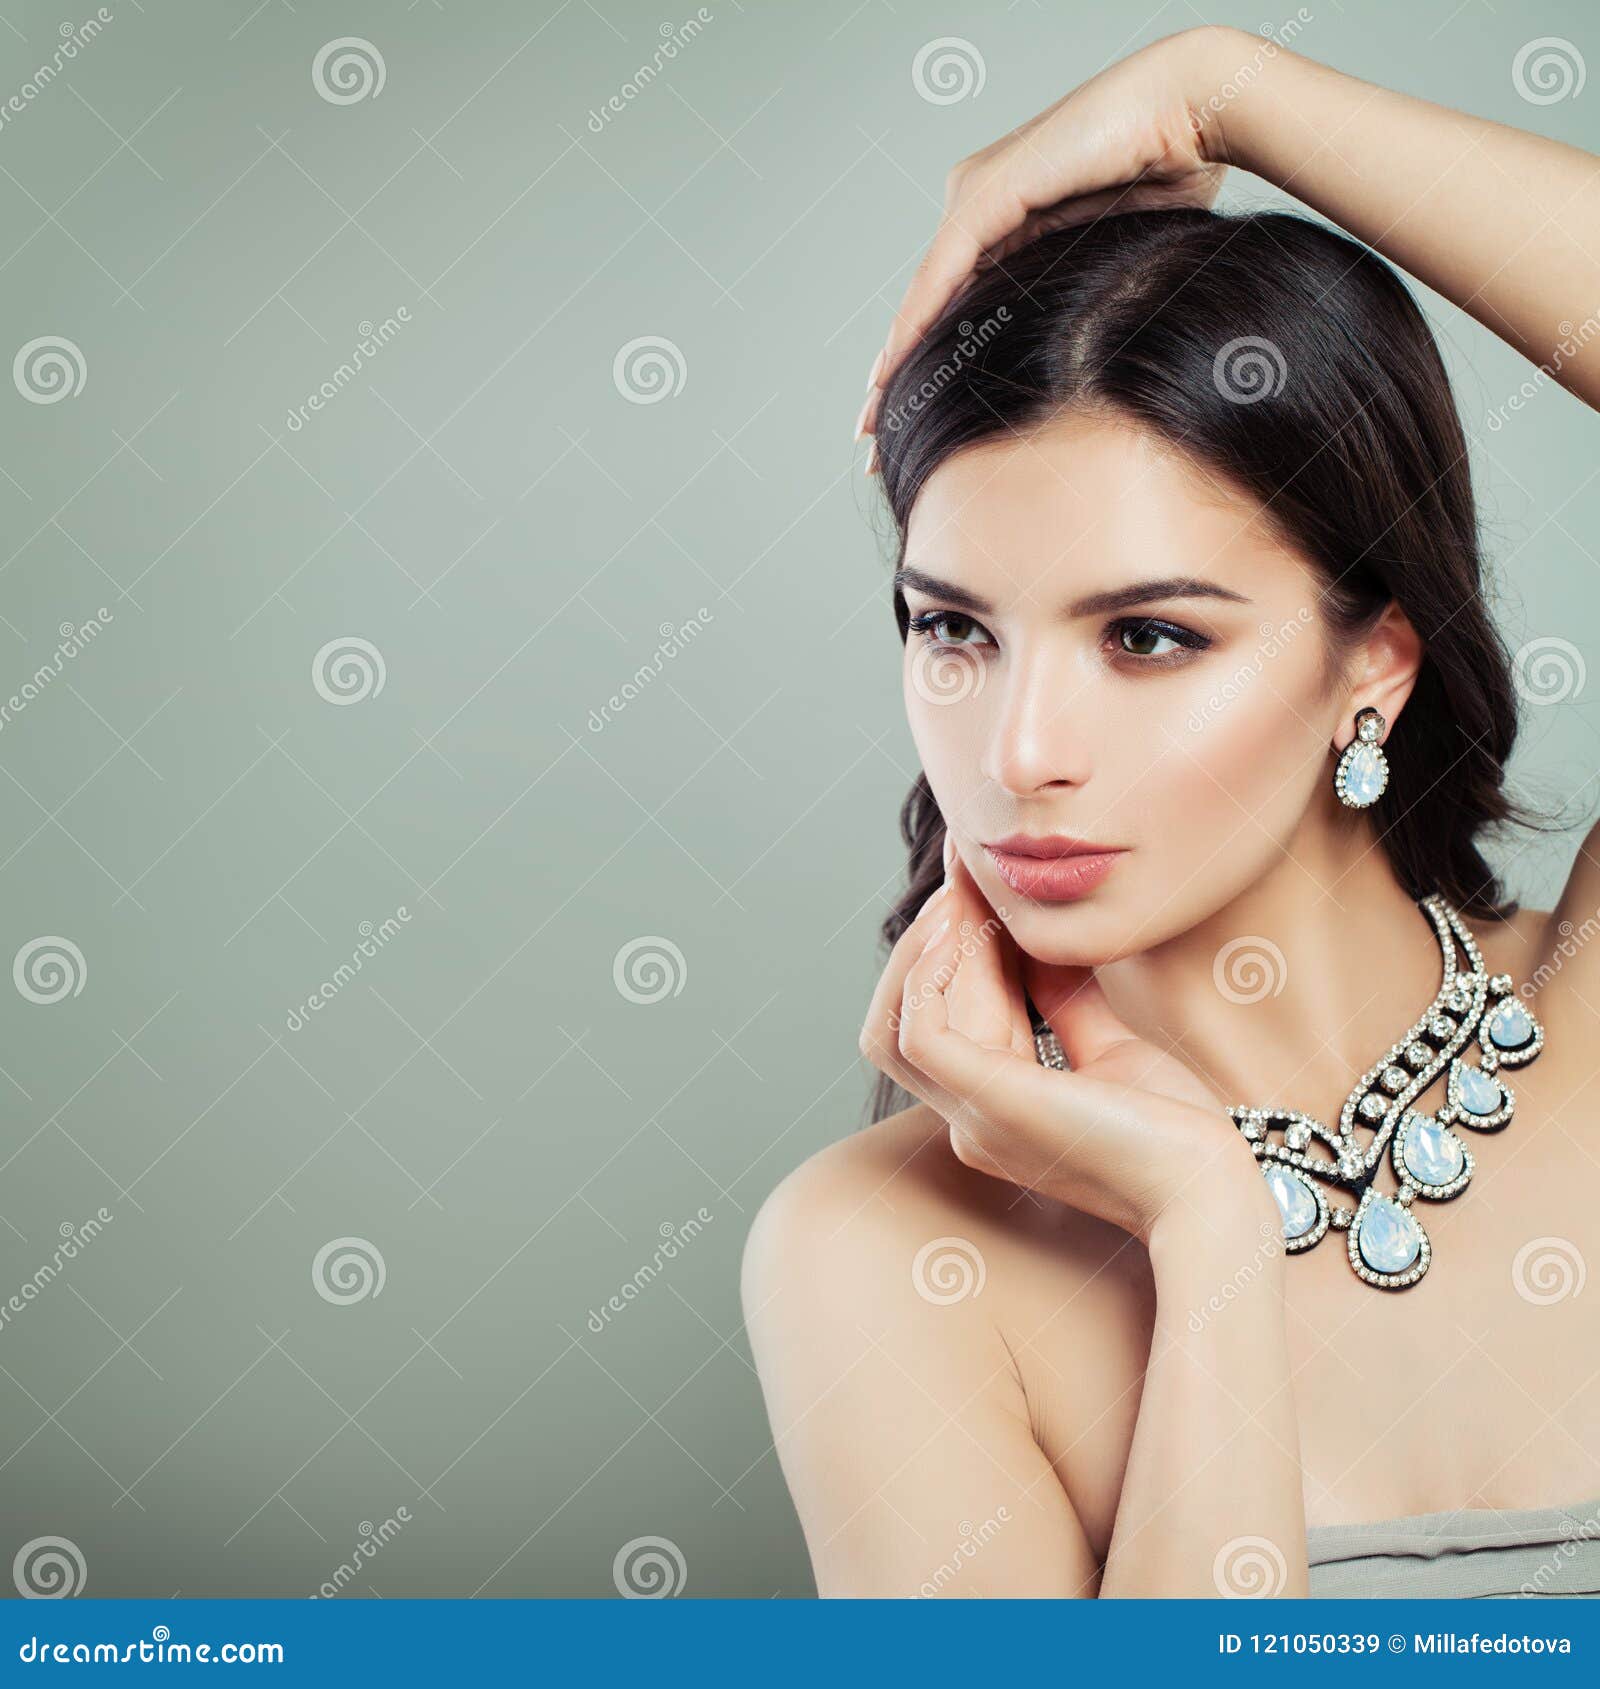 Collar De La Joyería De Mujer Que Lleva Morena Joven Imagen de archivo - Imagen de fondo, partido: 121050339